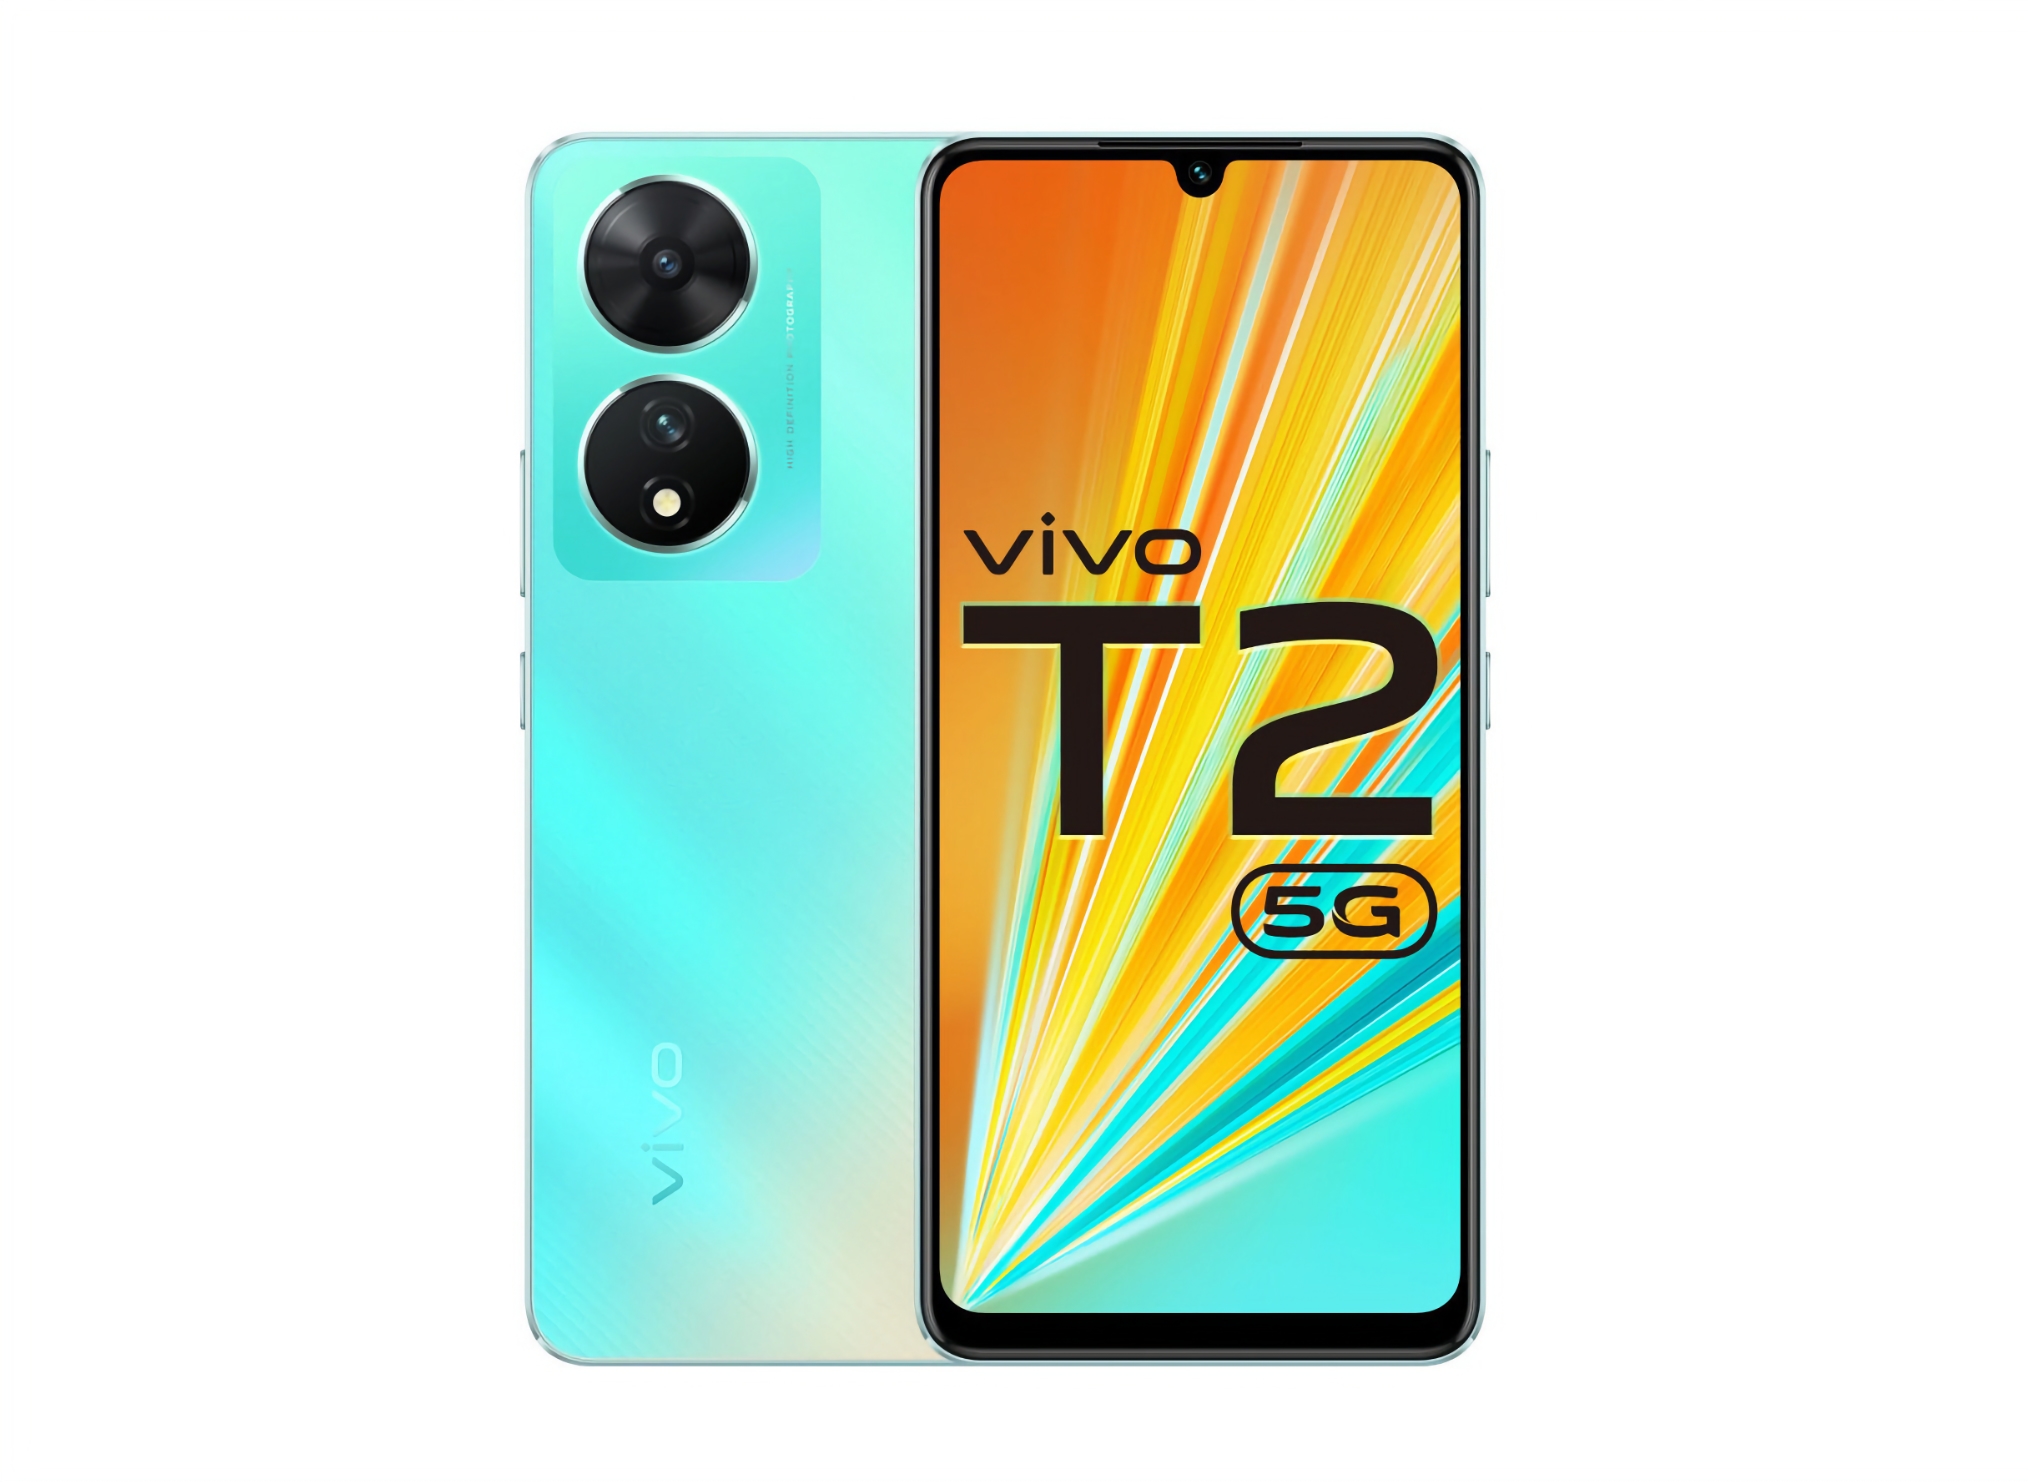 vivo T2 5G: wyświetlacz AMOLED 90 Hz, układ Snapdragon 695, aparat 64 MP i bateria 4 500 mAh z ładowaniem 44W za 230 dolarów